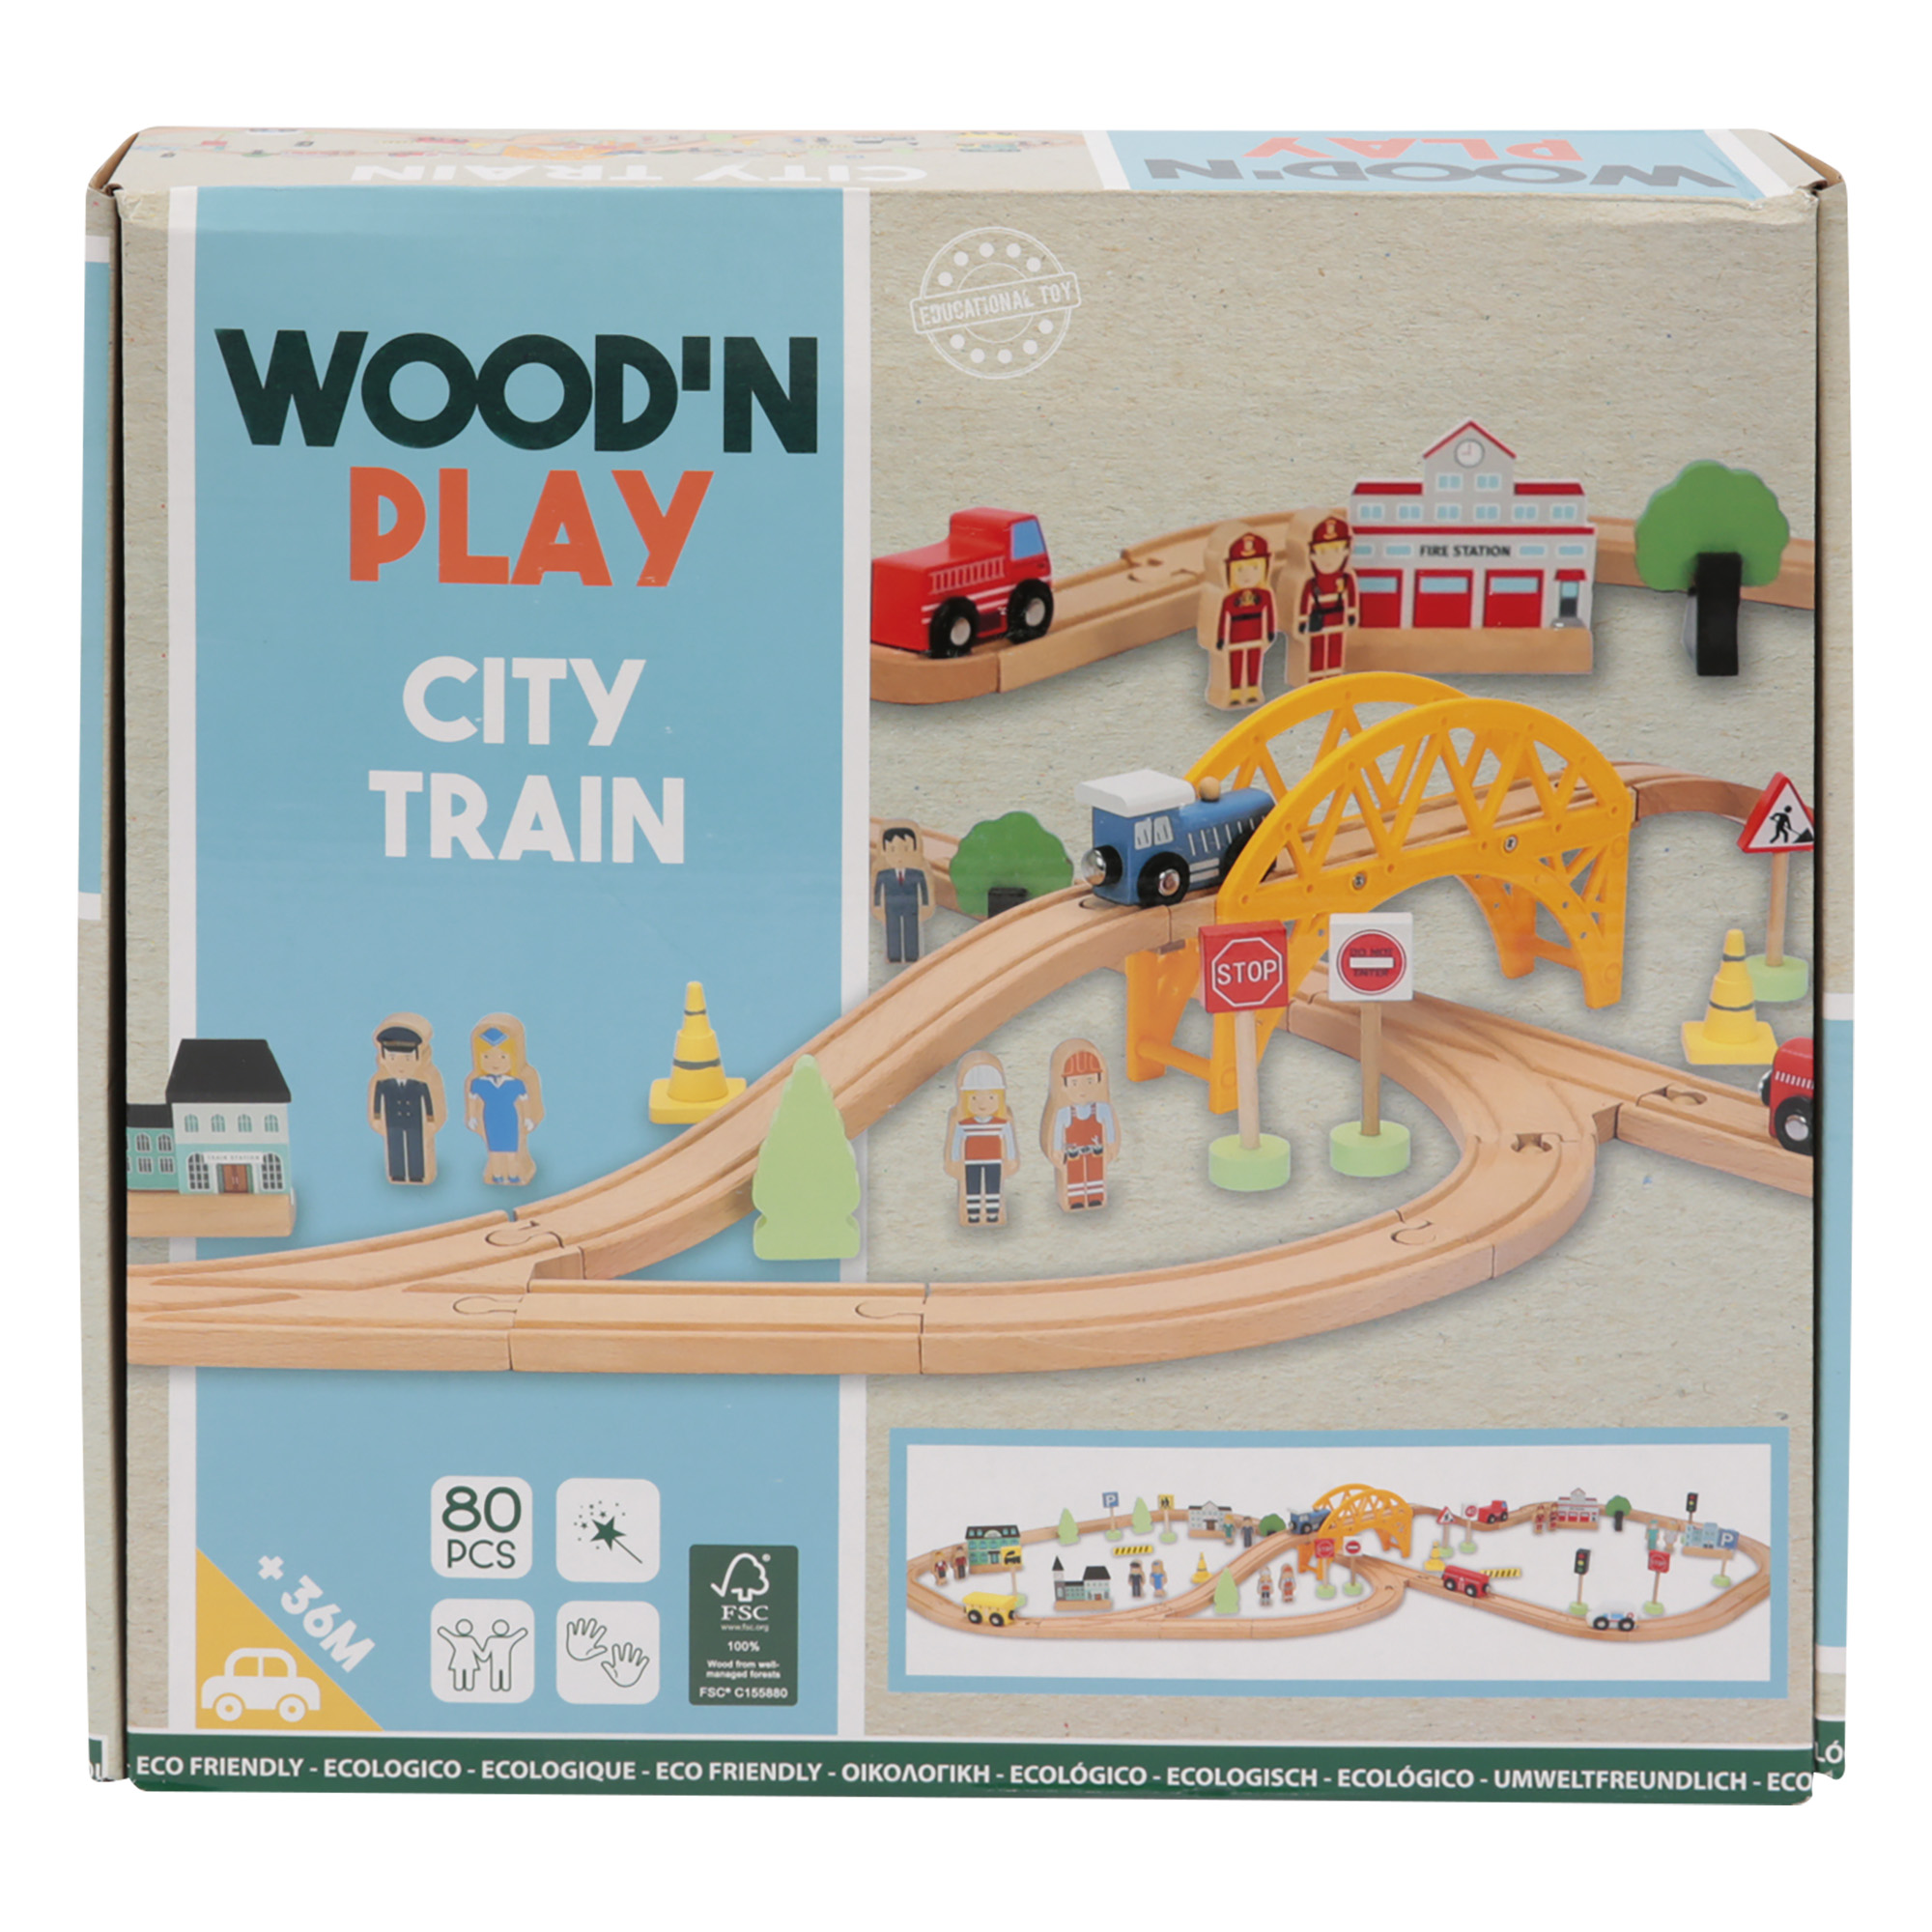 Trenino city wood n' play - Wood n' Play